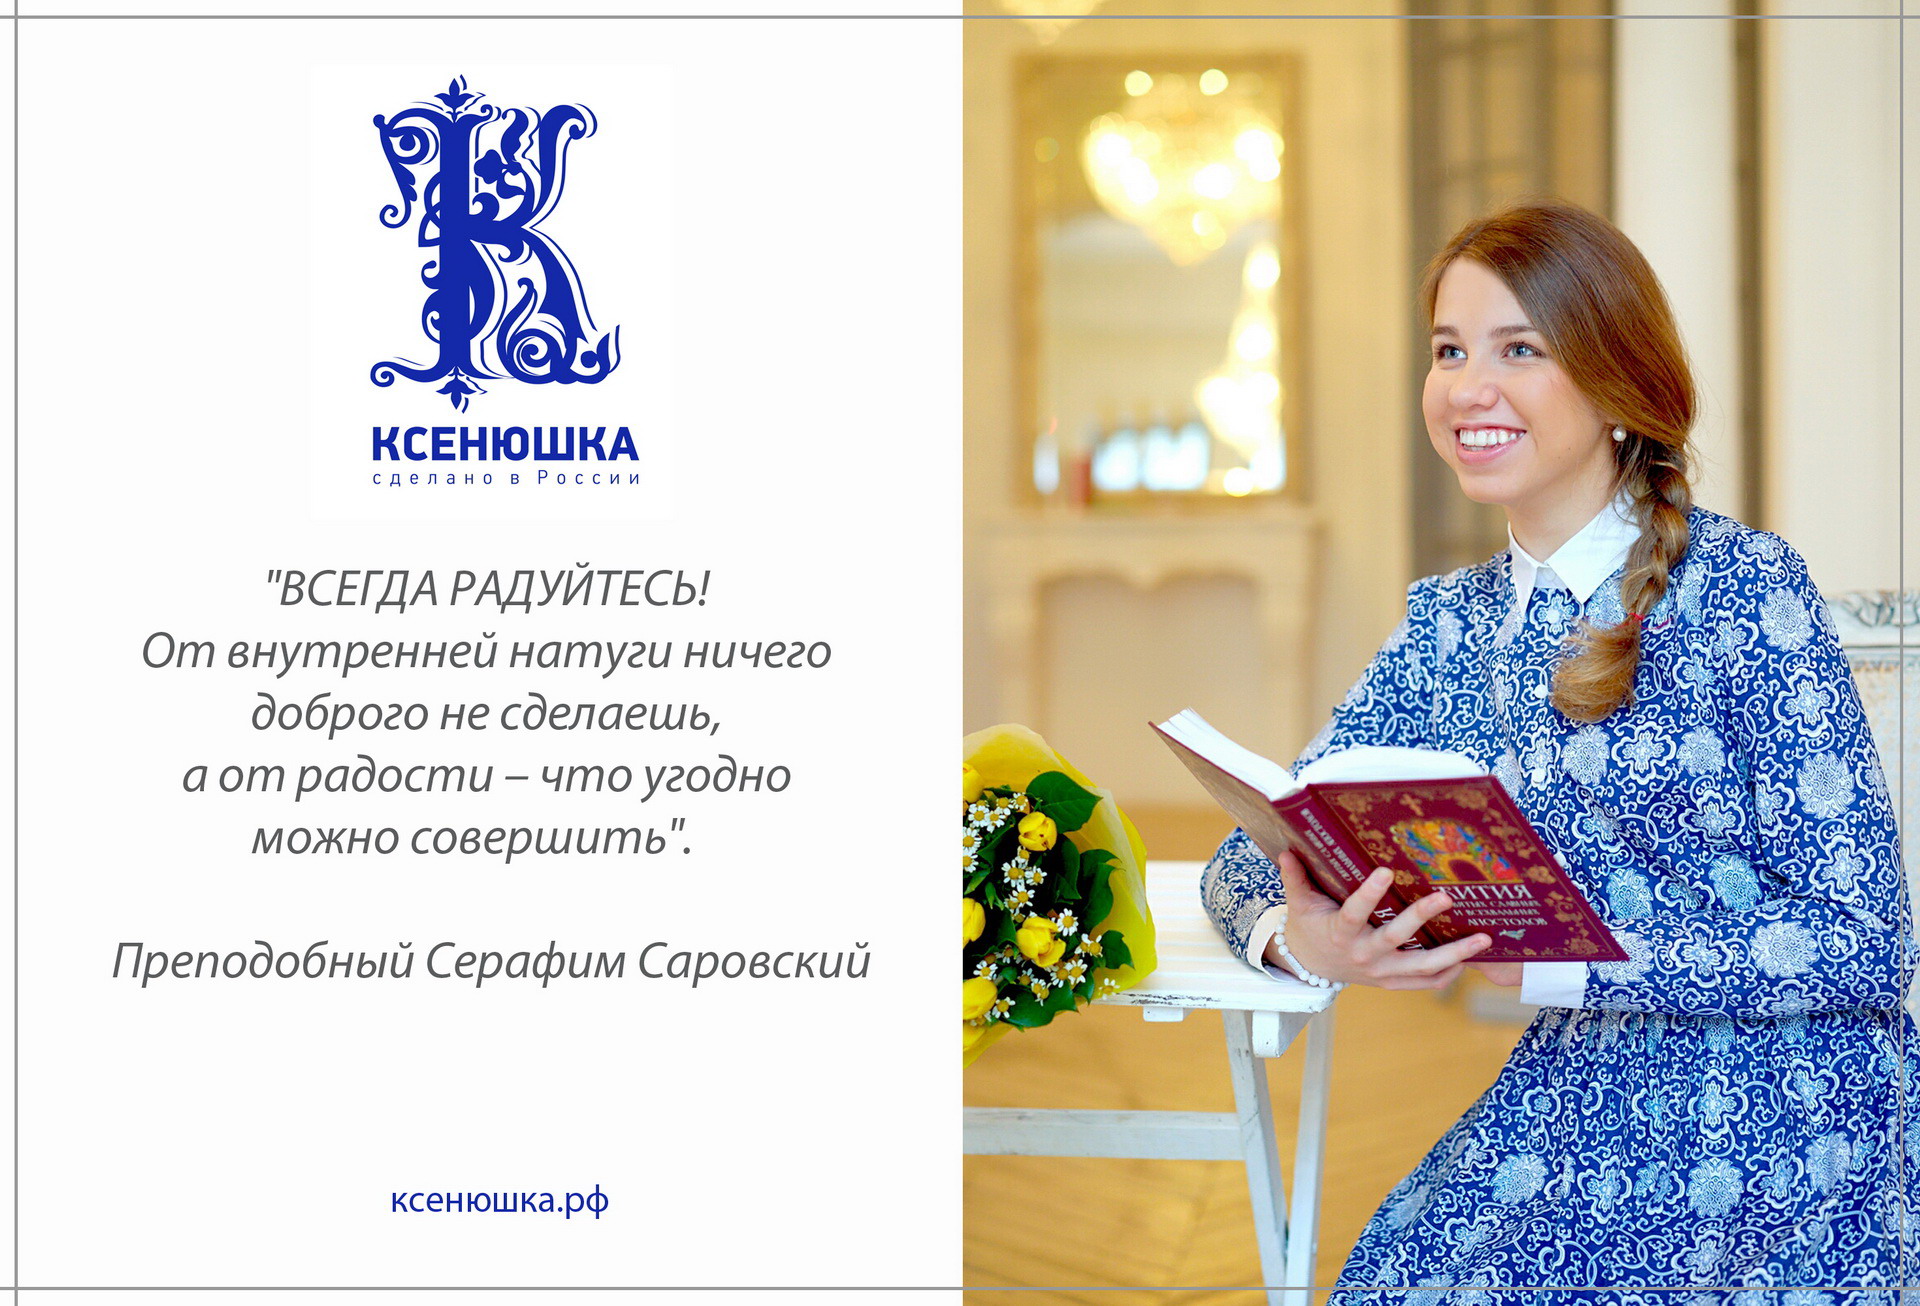 Ксенюшка Интернет Магазин Православного Платья Официальный